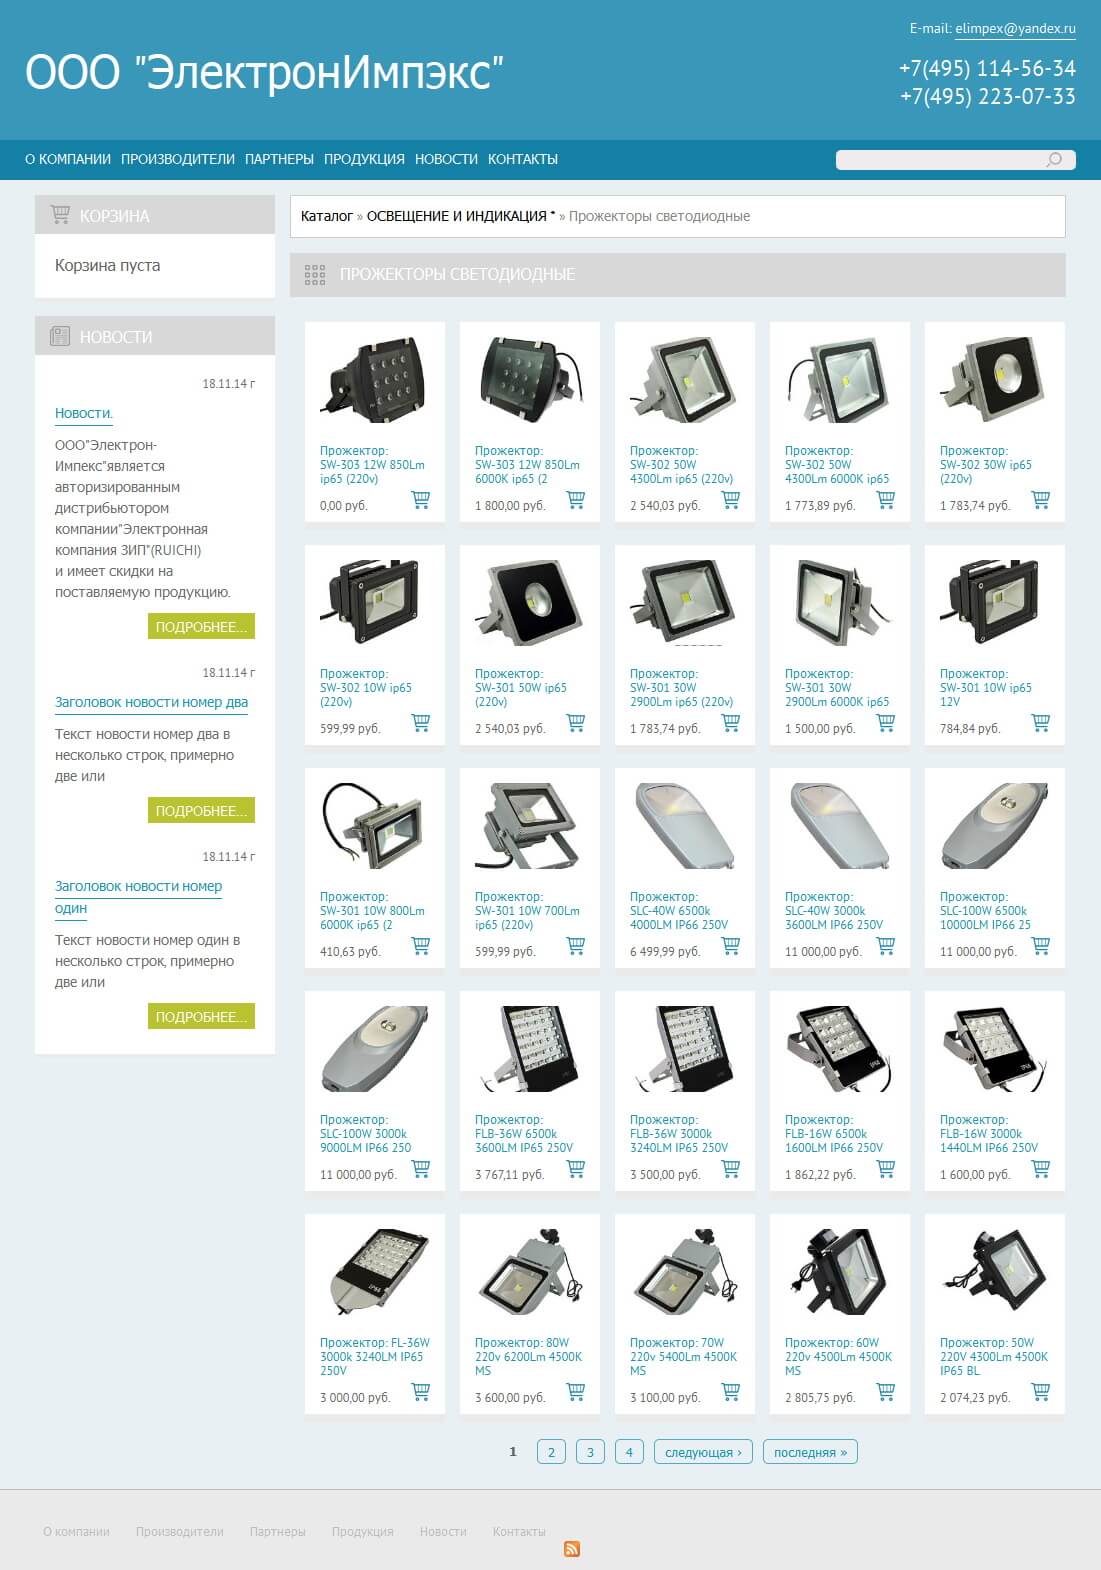 Интернет-магазин электронных компонентов, оборудования, приборов, расходных материалов для электроники ООО ЭлектронИмпэкс